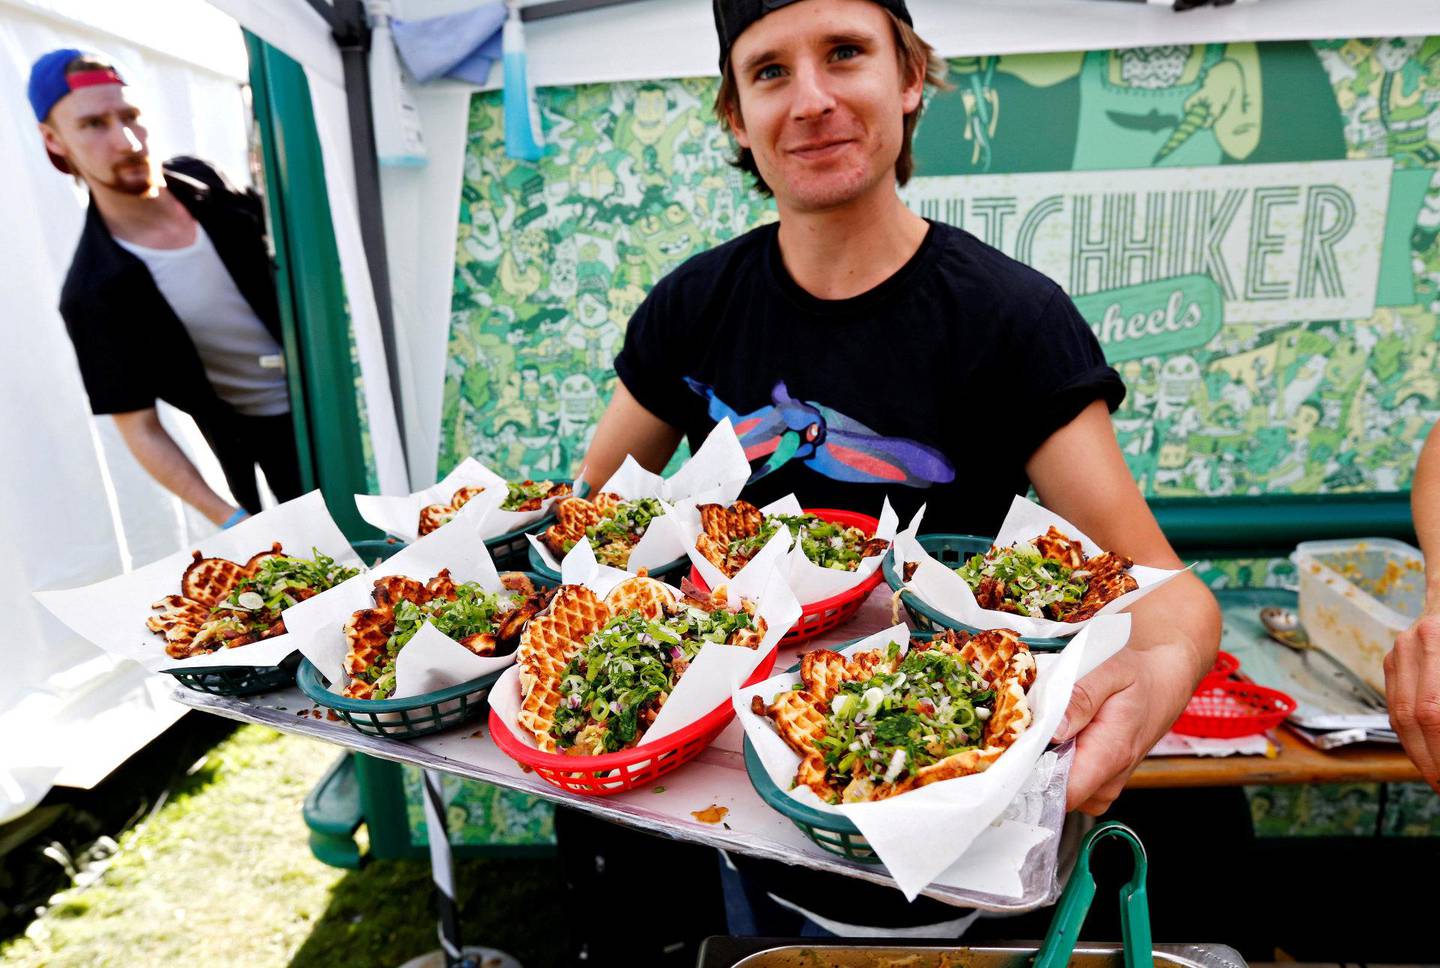 95 prosent av maten som serveres på Øyafestivalen er økologisk. FOTO: ANETTE KARLSEN/NTB SCANPIX